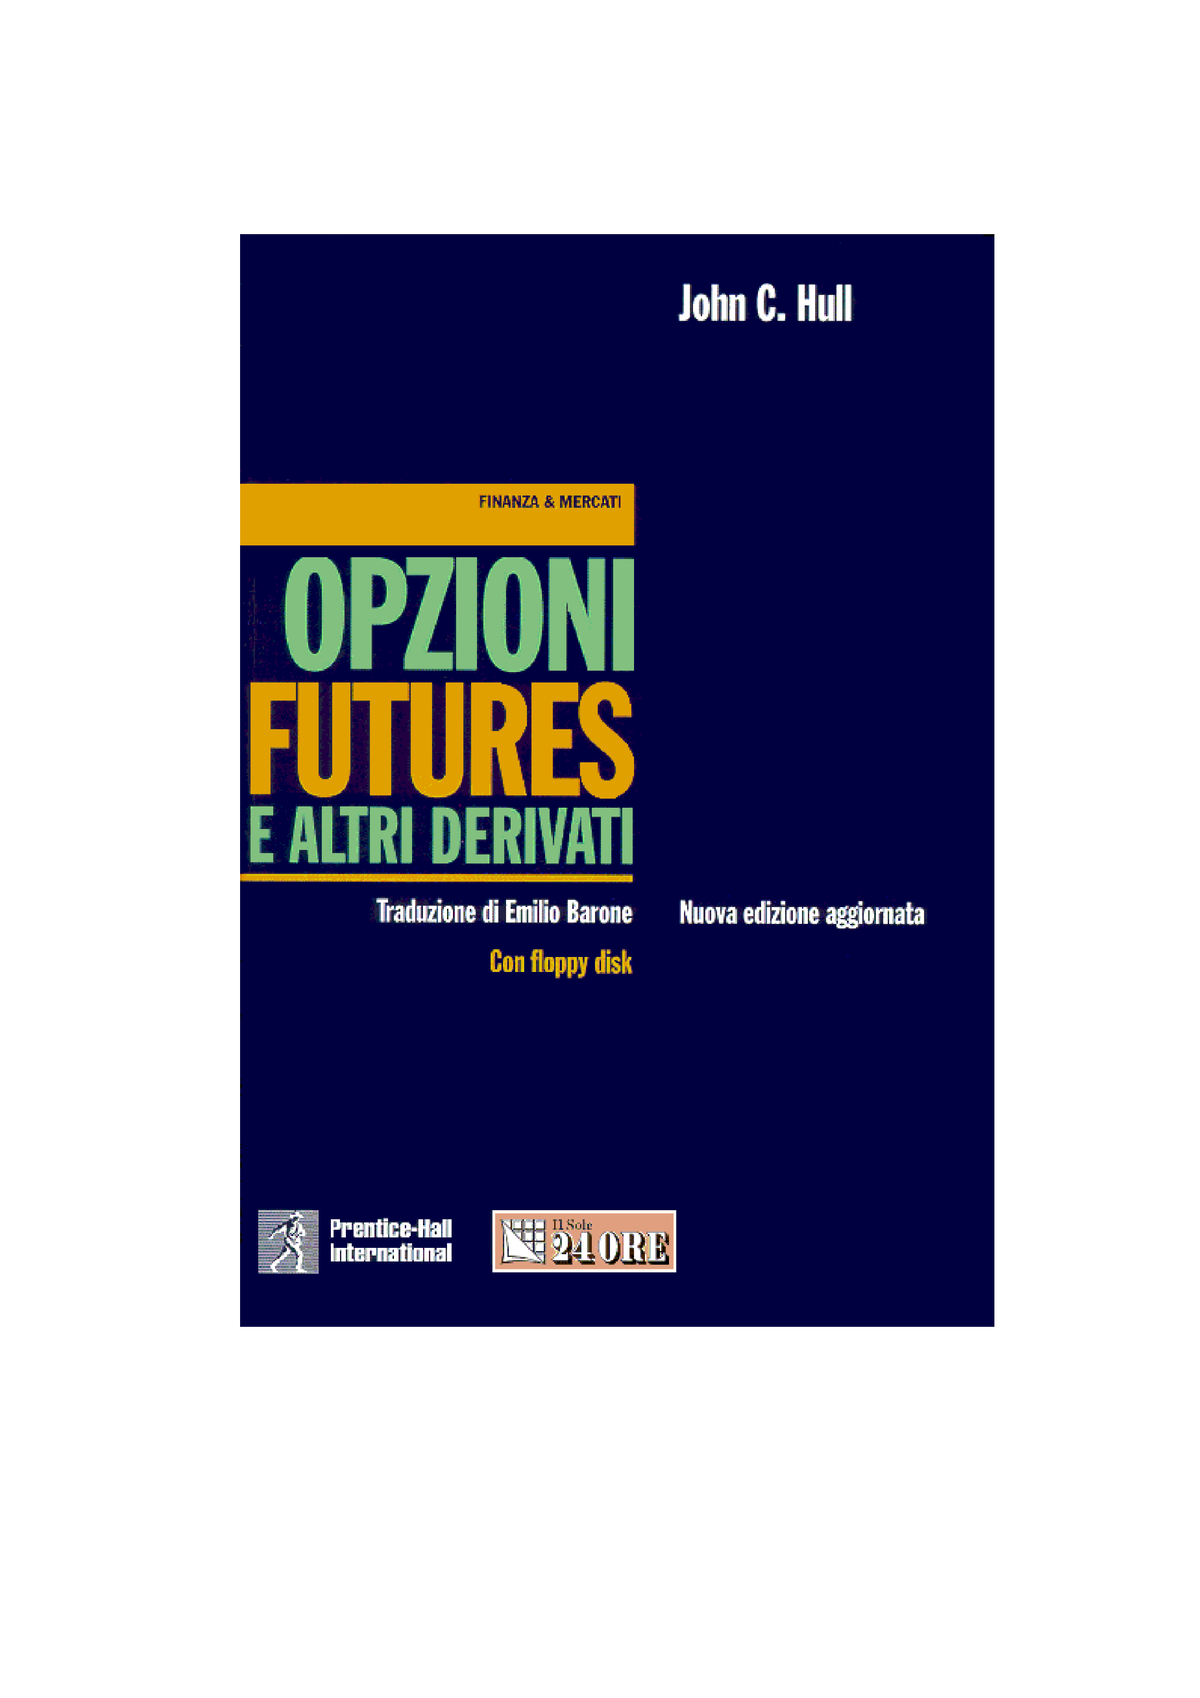 Opzioni, futures e altri derivati. Manuale delle soluzioni - John C. Hull -  Libro - Pearson - Prentice Hall